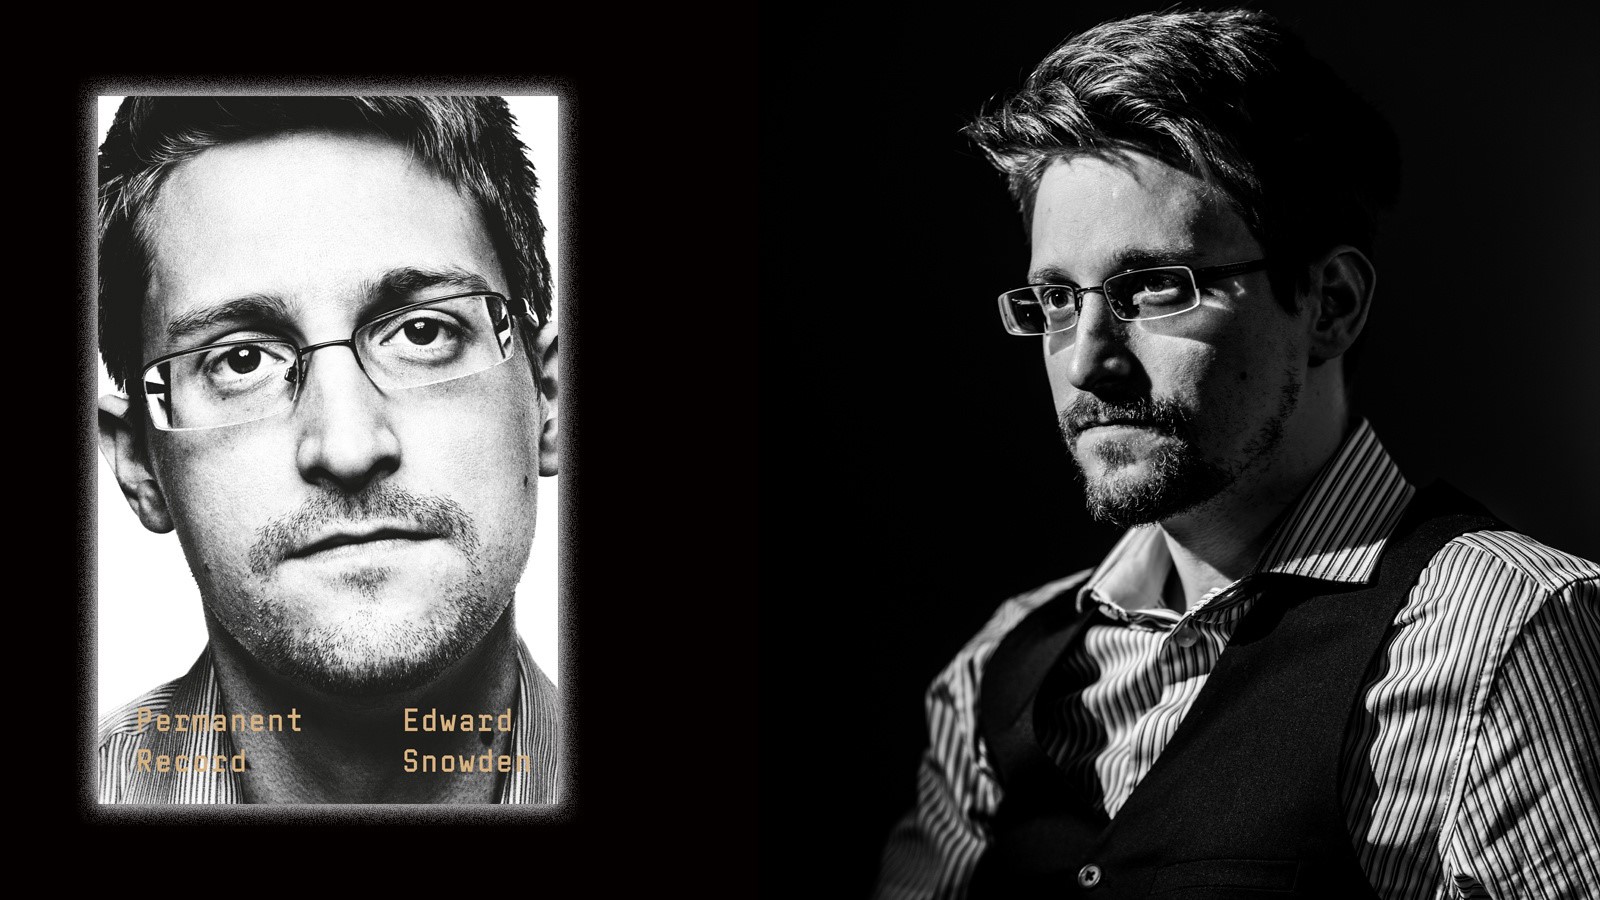 Snowden oduševljen: Facebook i Instagram su isključeni, svijet je zdravije mjesto makar na dan